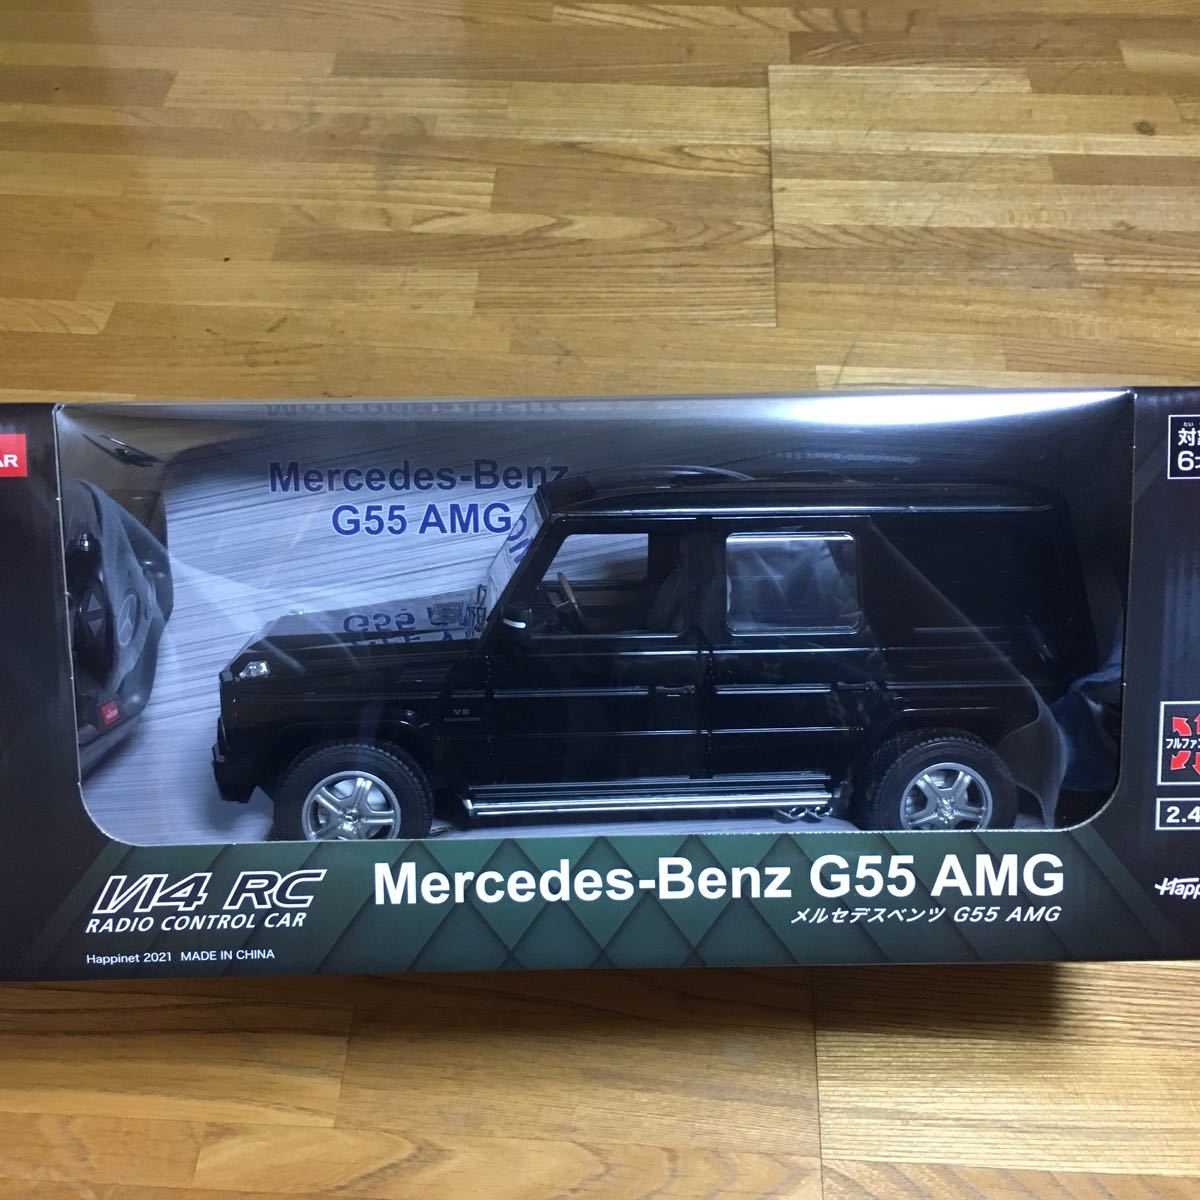 【新品未開封】 メルセデス・ベンツ G55 AMG ラジコン 新品 未使用 ベンツ ゲレンデ ブラック Mercedes-Benz